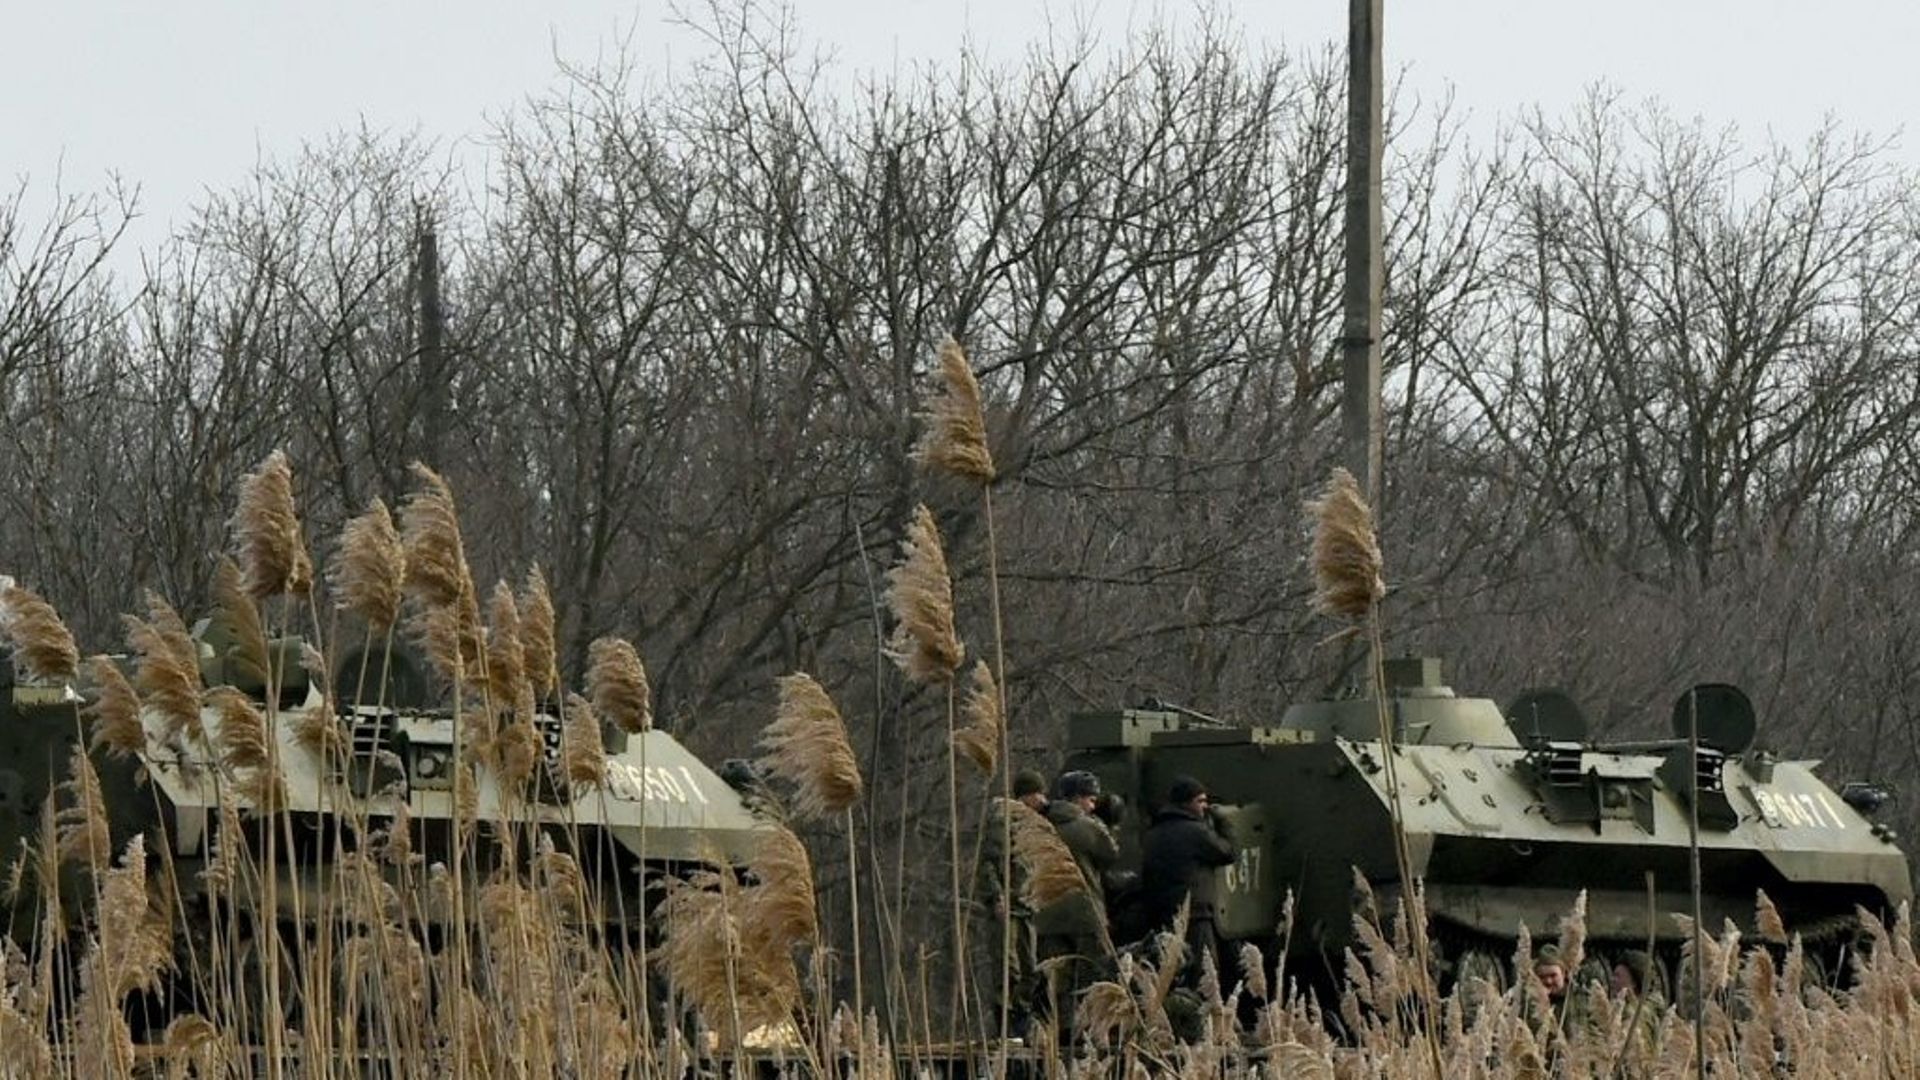 Des véhicules militaires russes chargés sur la plate-forme d'un train dans la région russe de Rostov, à une cinquantaine de km de la frontière avec la république auto-proclamée de Donetsk, le 23 février 2022